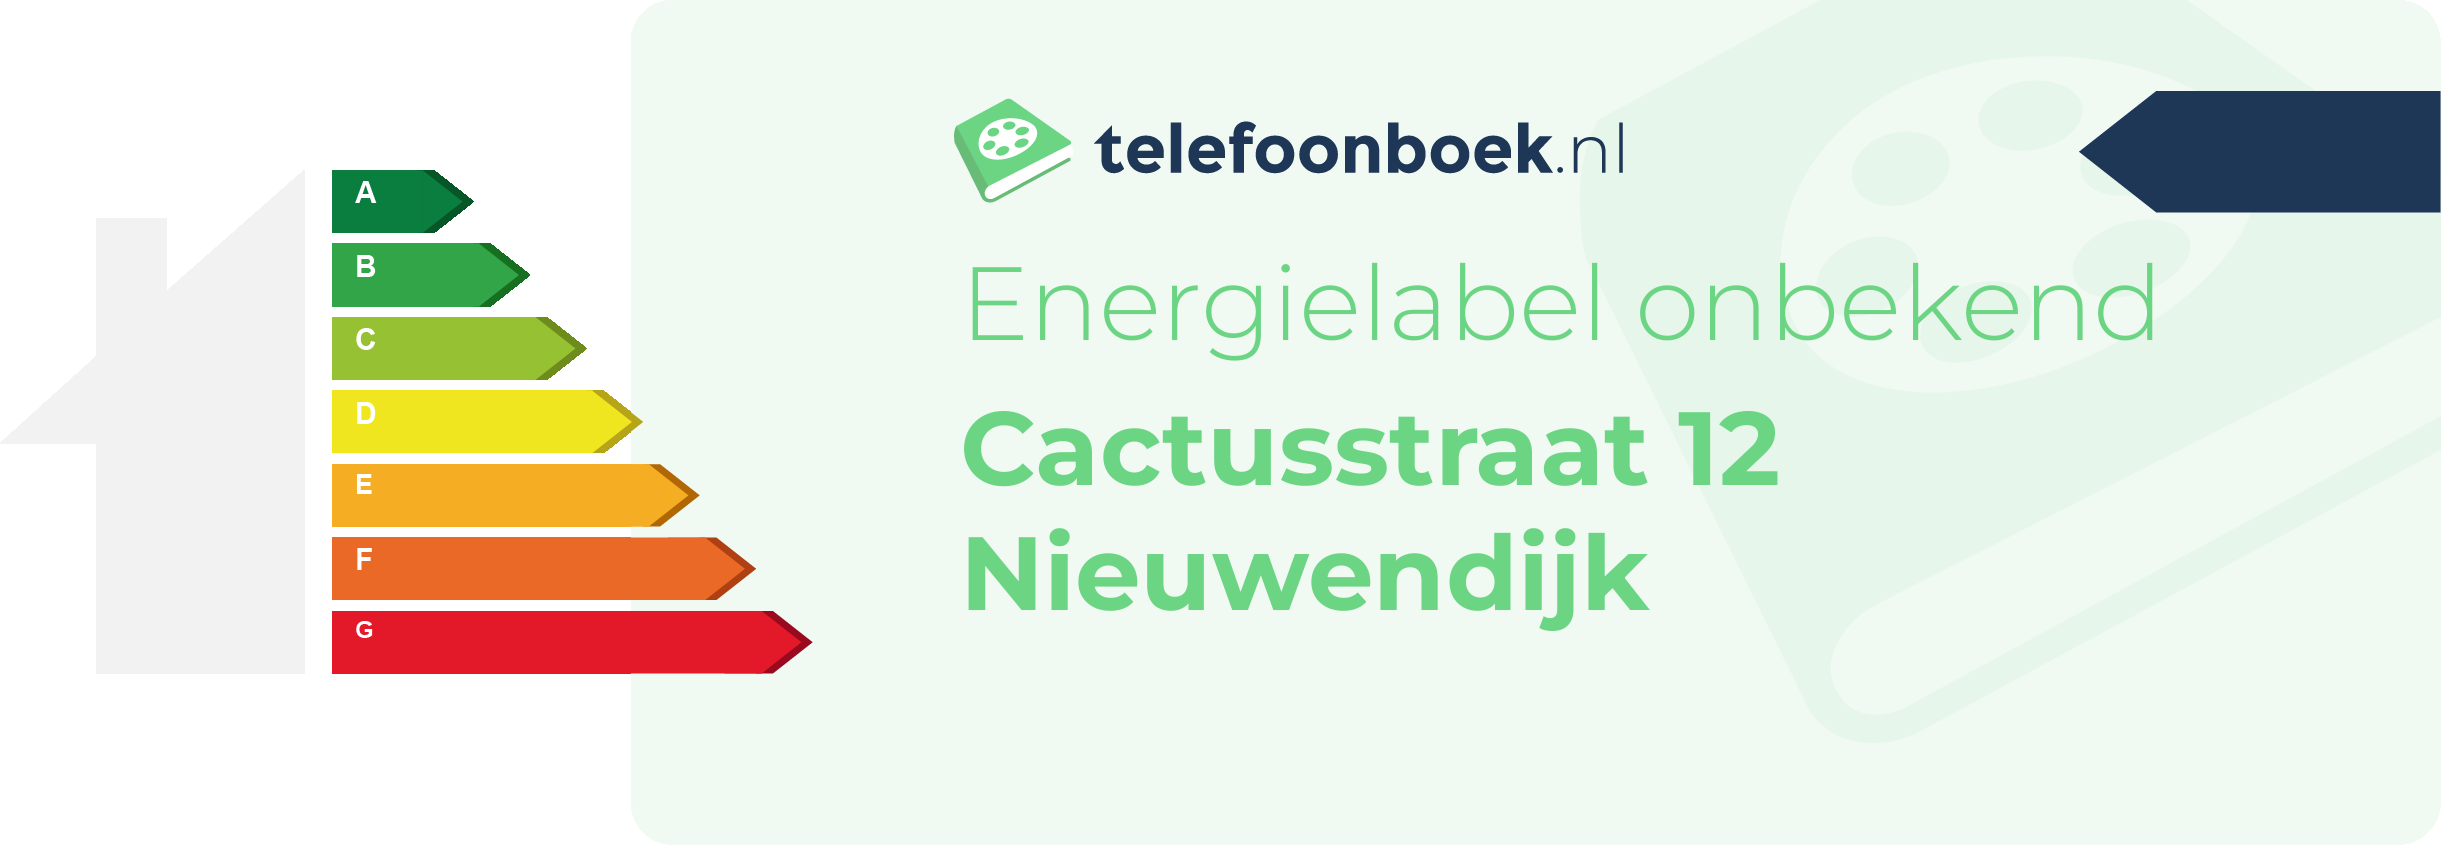 Energielabel Cactusstraat 12 Nieuwendijk